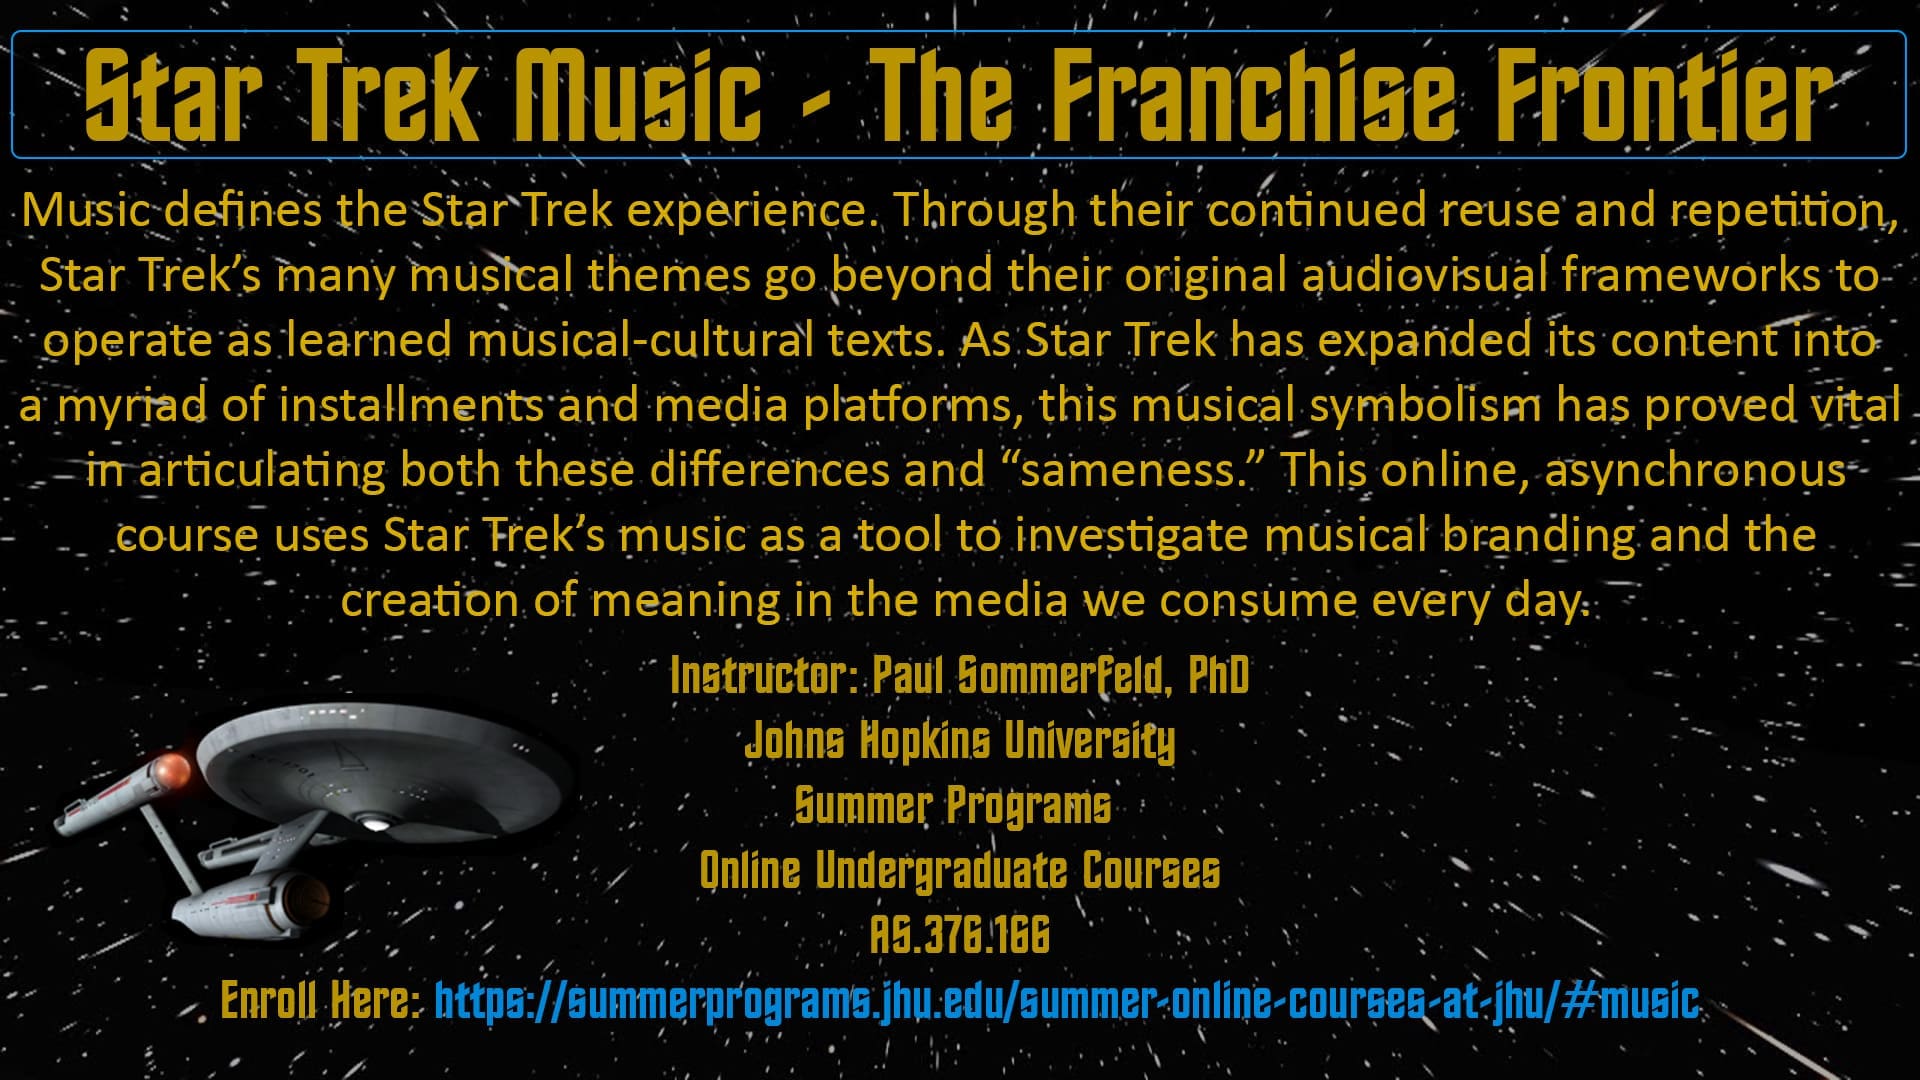 Star Trek Music: The Franchise Frontier